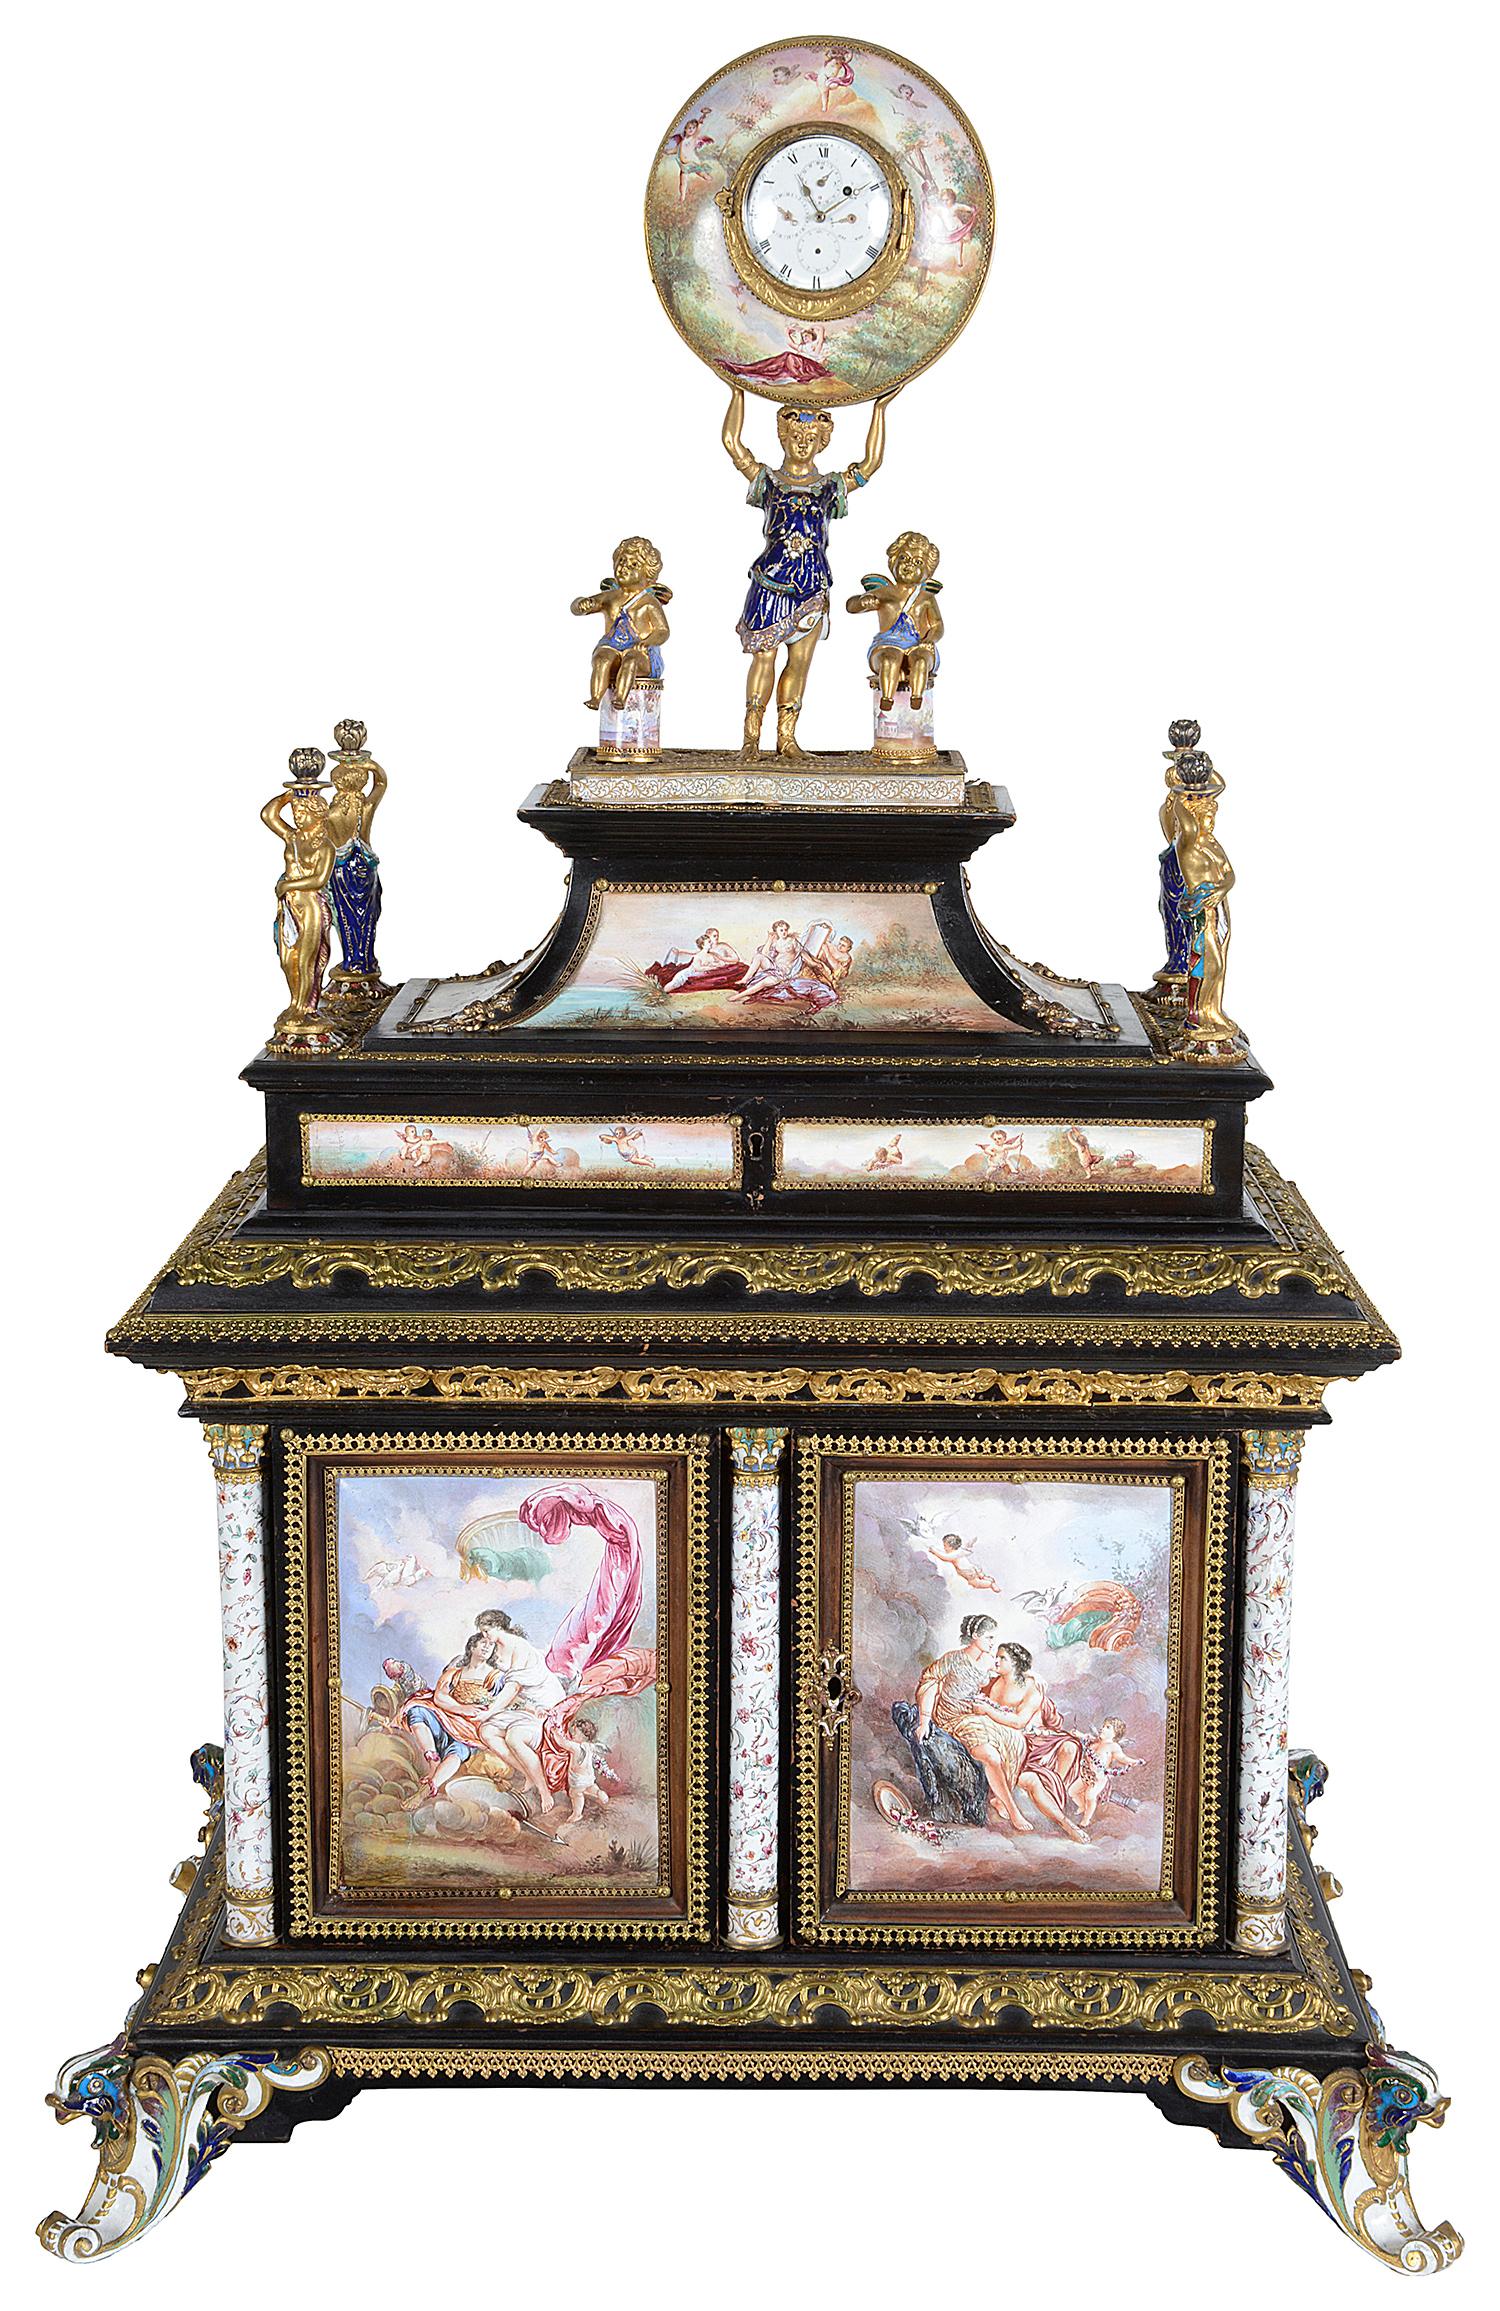 Ein sehr beeindruckender Wiener Emaille-Tischschrank aus dem 19. Jahrhundert mit vergoldeten, mit Ormolu verkleideten Jungfrauen, die zwei Putten und eine Figur, die ein Uhrengehäuse trägt, umgeben.
Um den Schrank herum sind Emailtafeln angebracht,